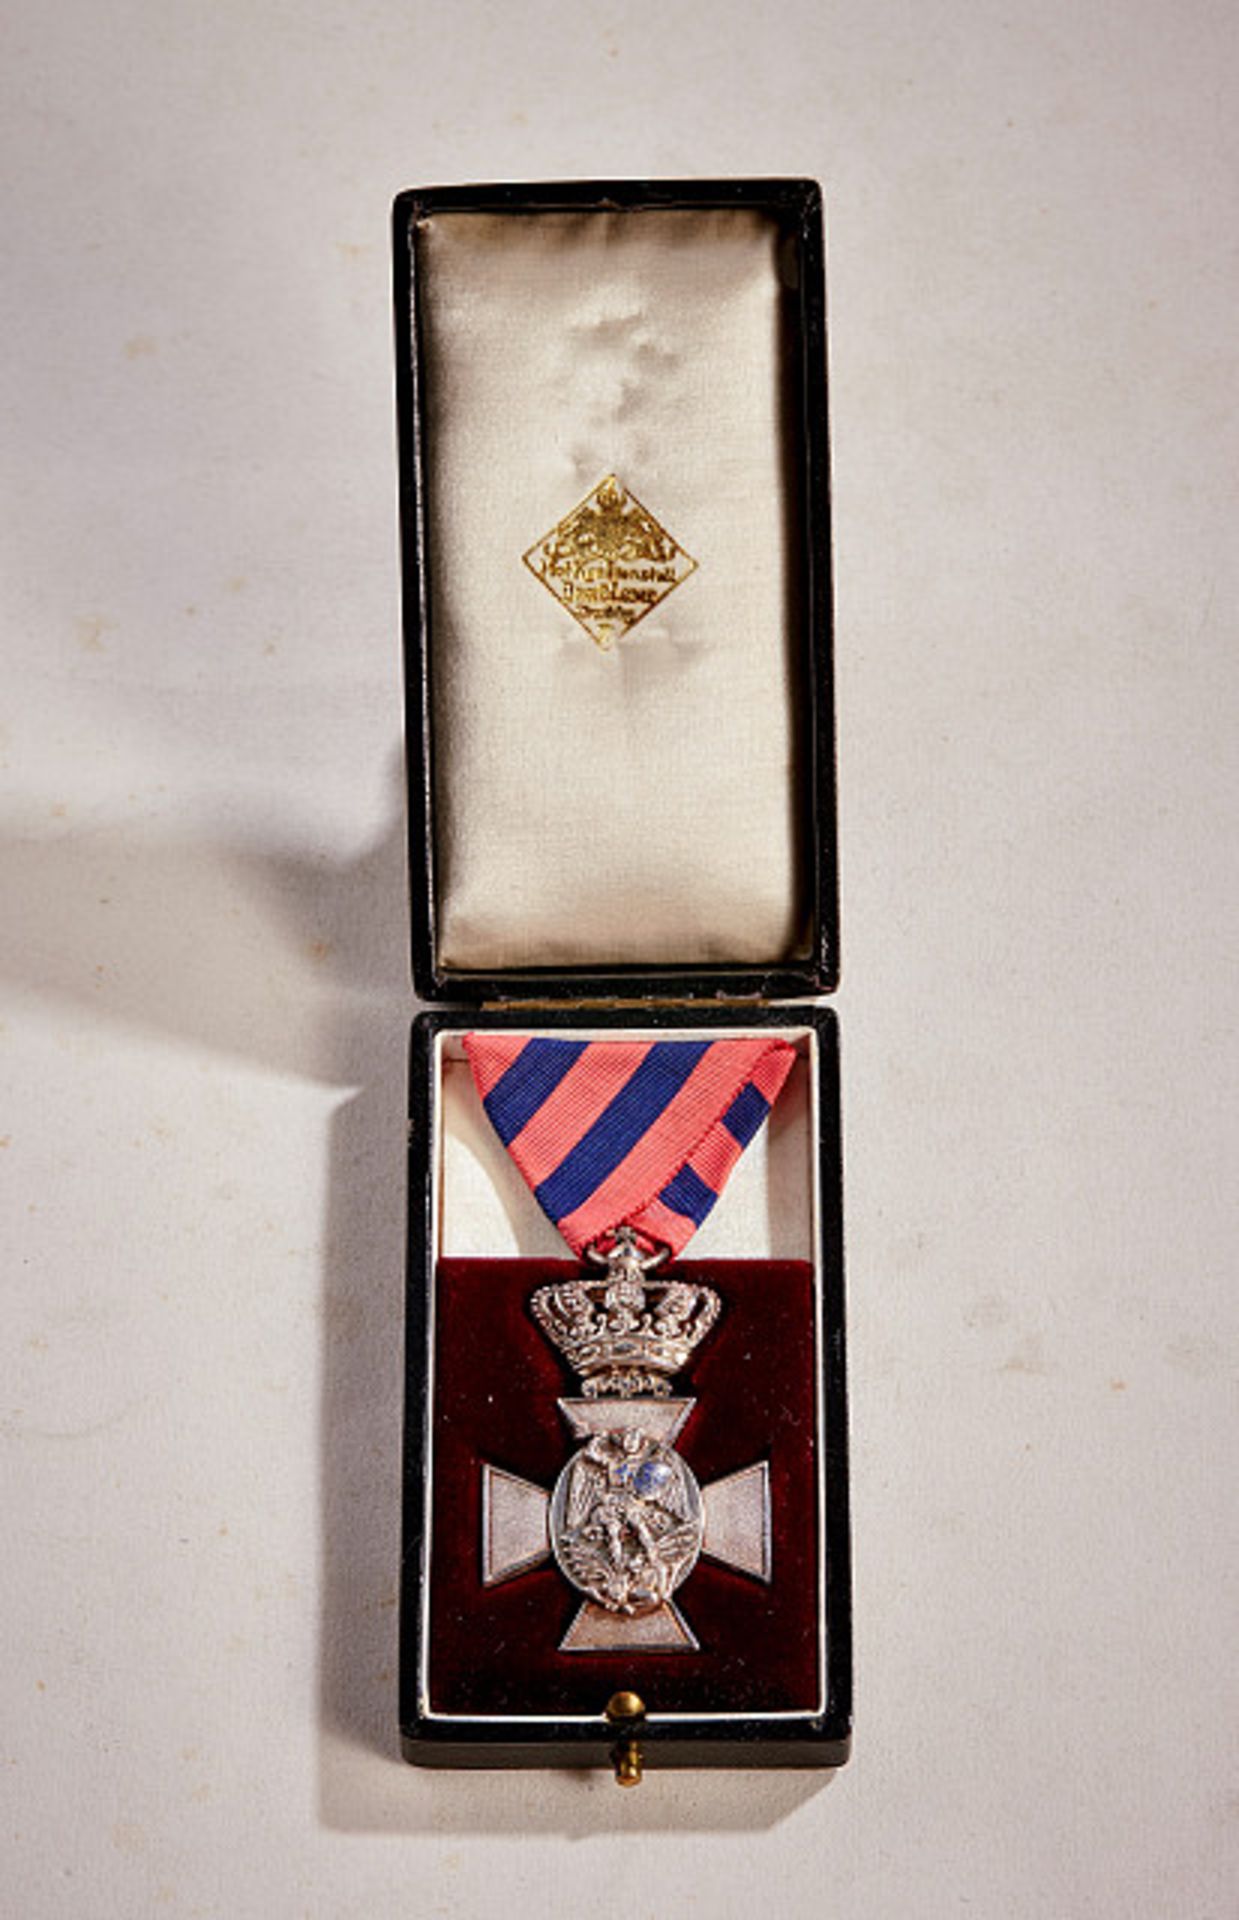 KÖNIGREICH BAYERN - VERDIENSTORDEN VOM HL. MICHAEL : Verdienstkreuz mit Krone, 1910 - 1918.Silber, - Bild 3 aus 4